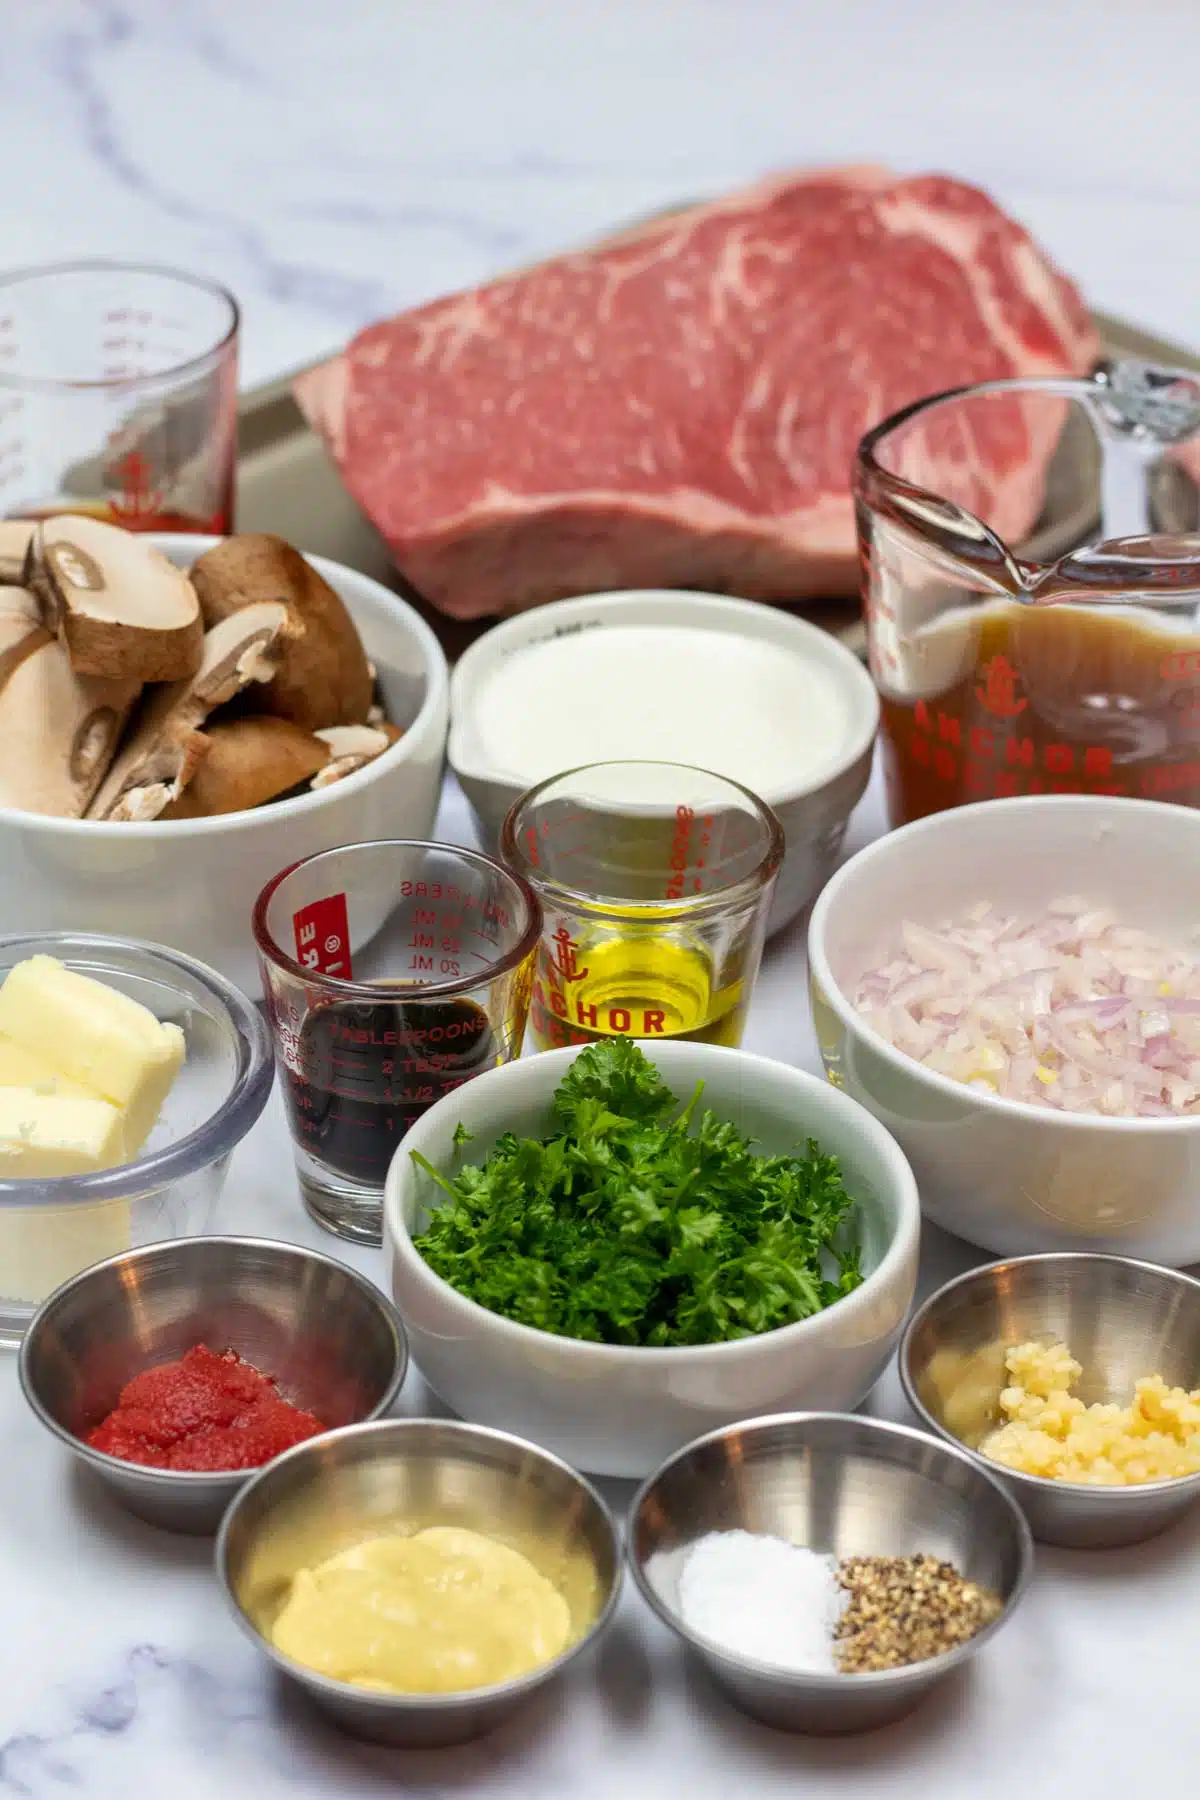 Tall image showing steak Diane ingredients.